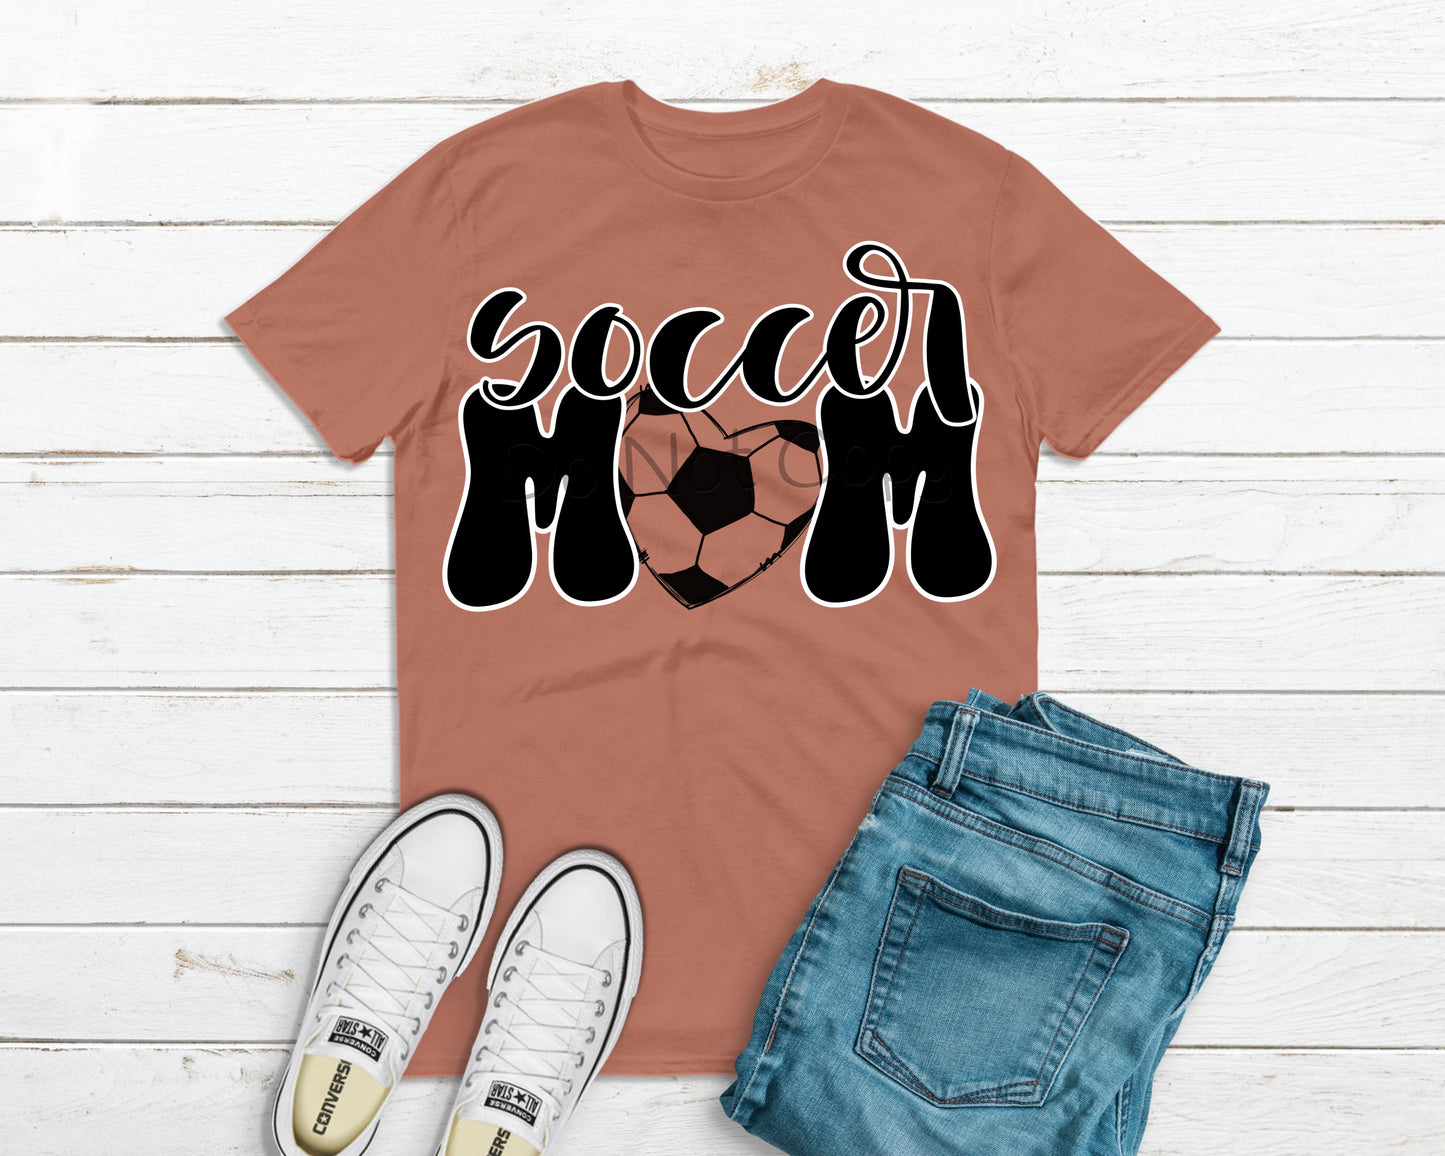 Soccer mom-DTF